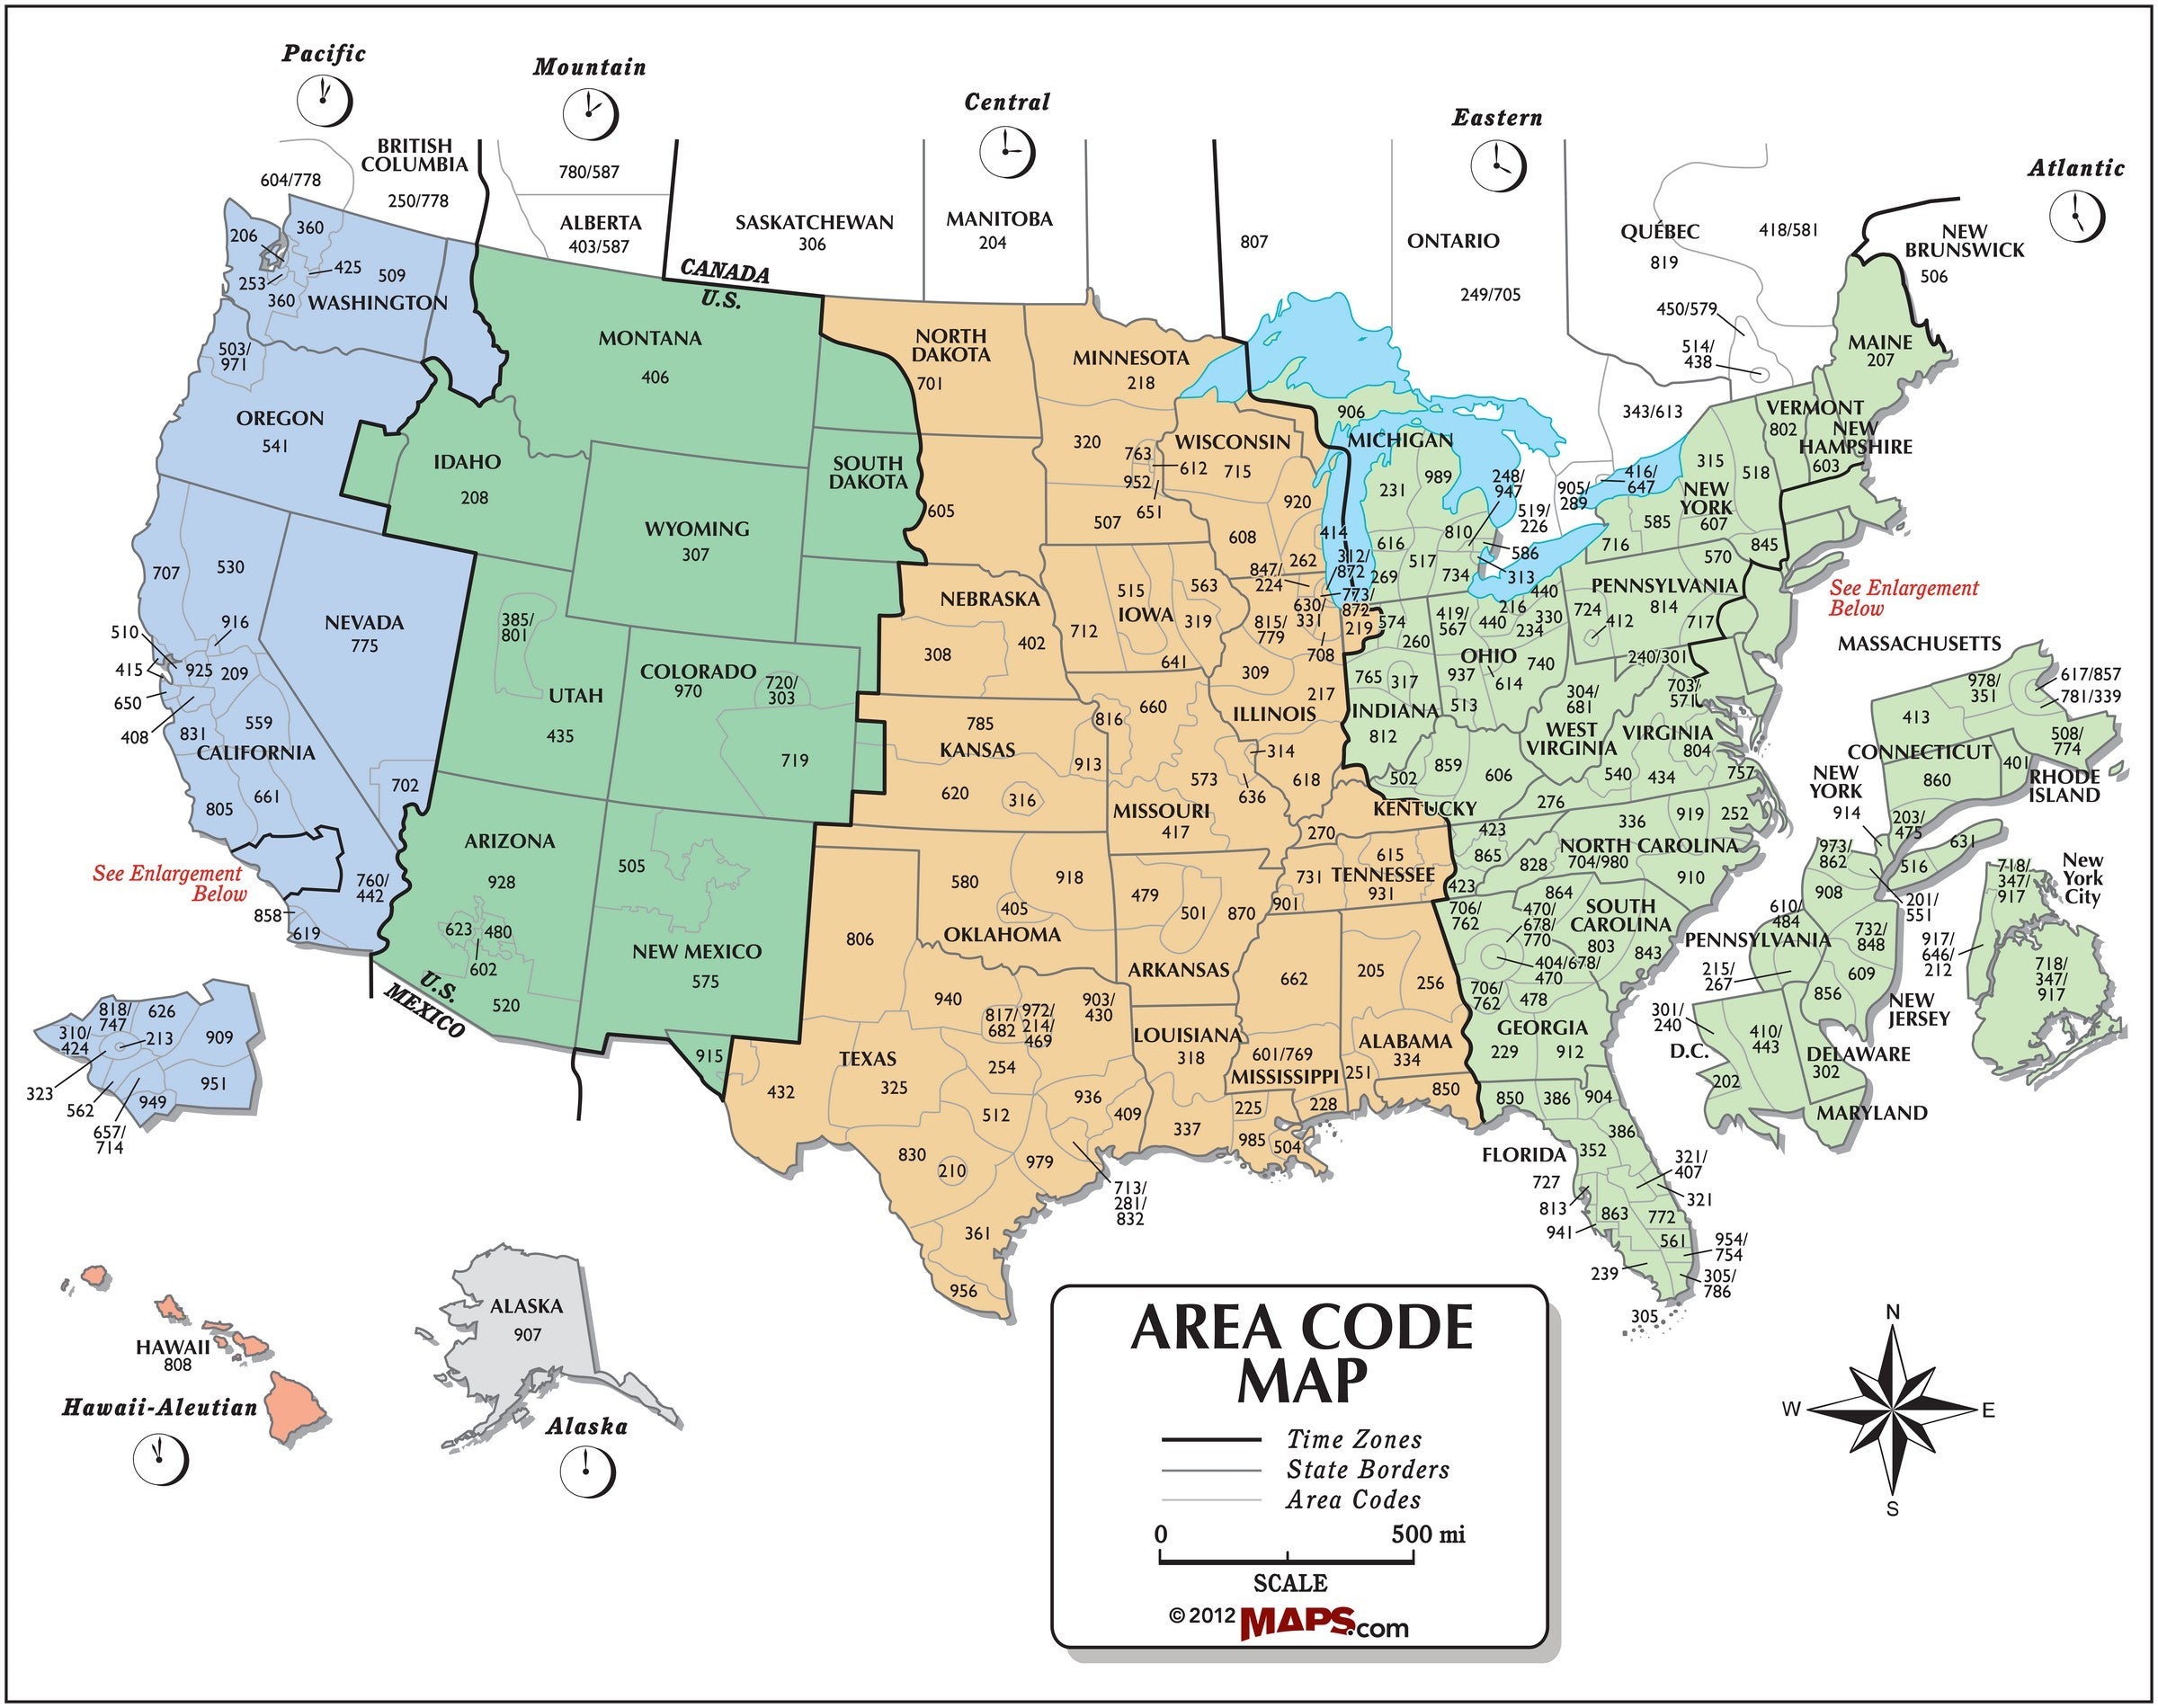 usa area code and time zone wall map mapscomcom